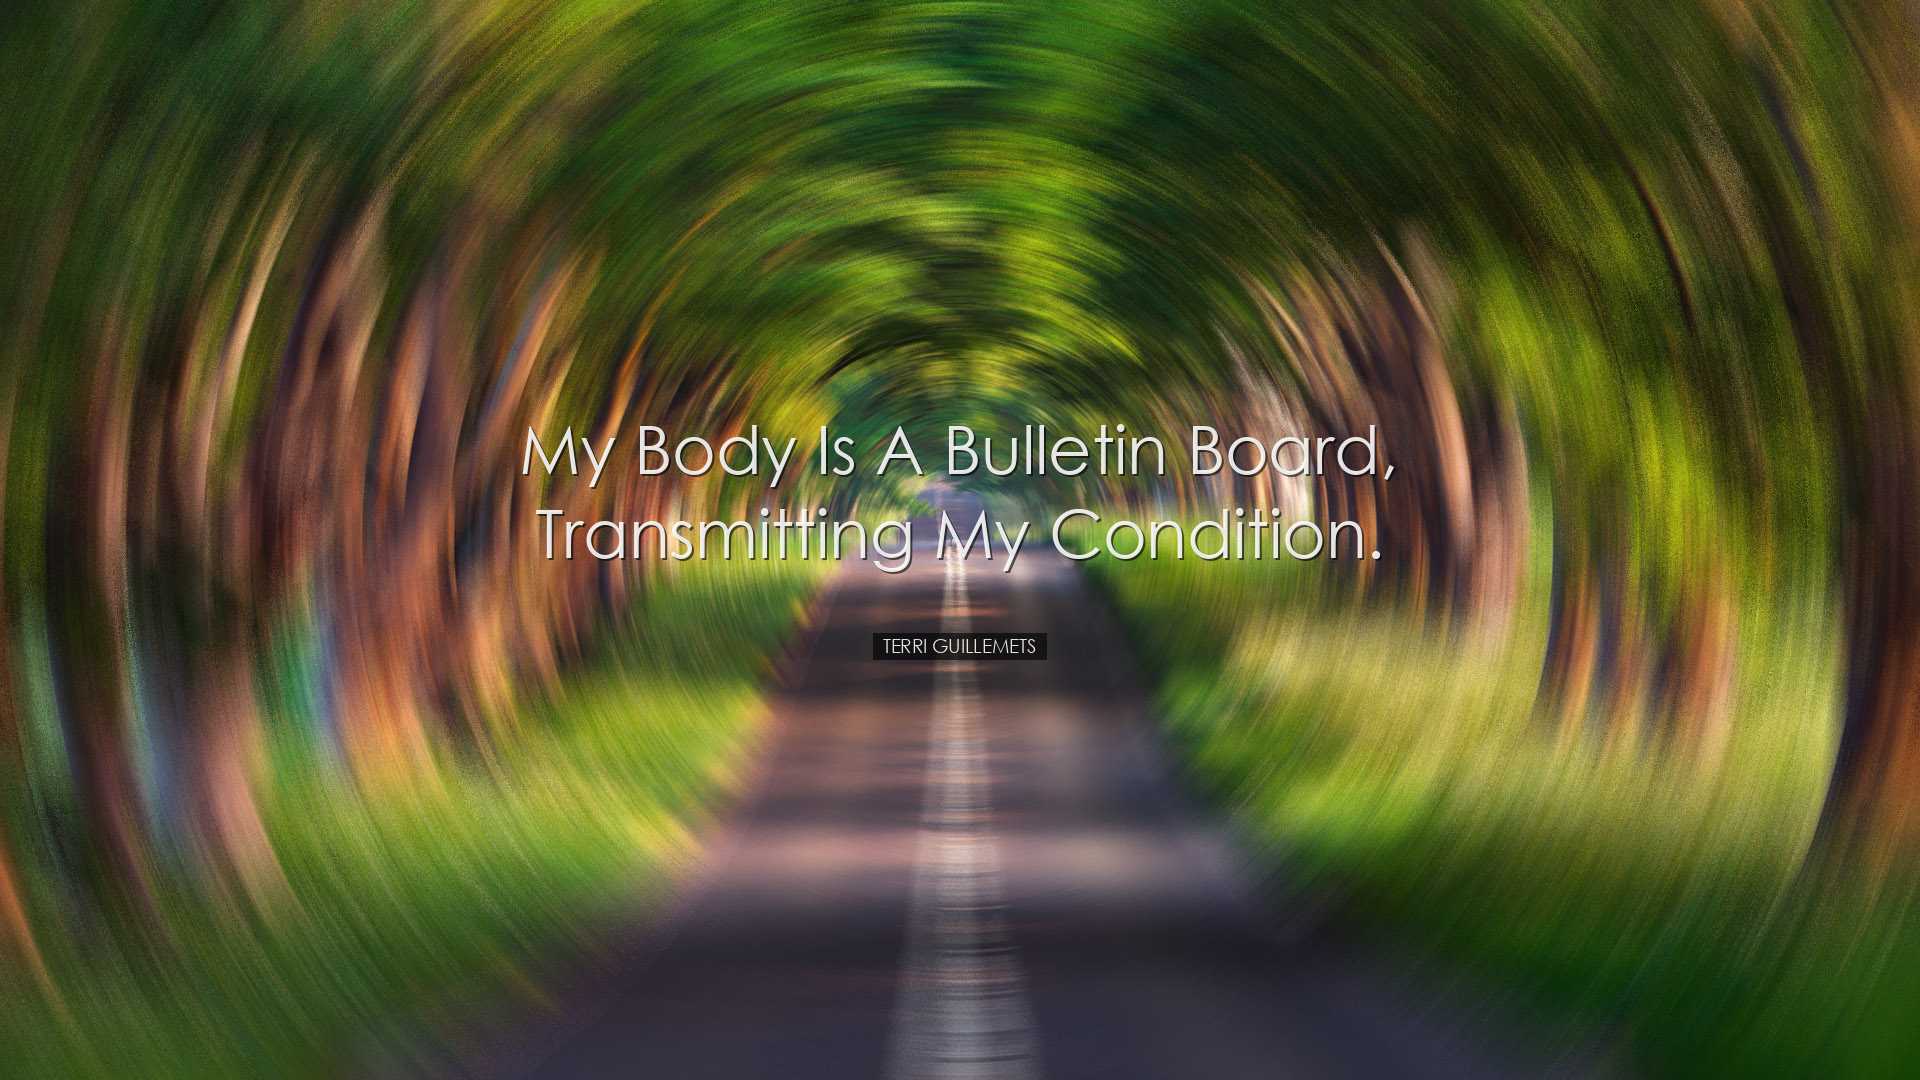 My body is a bulletin board, transmitting my condition. - Terri Gu